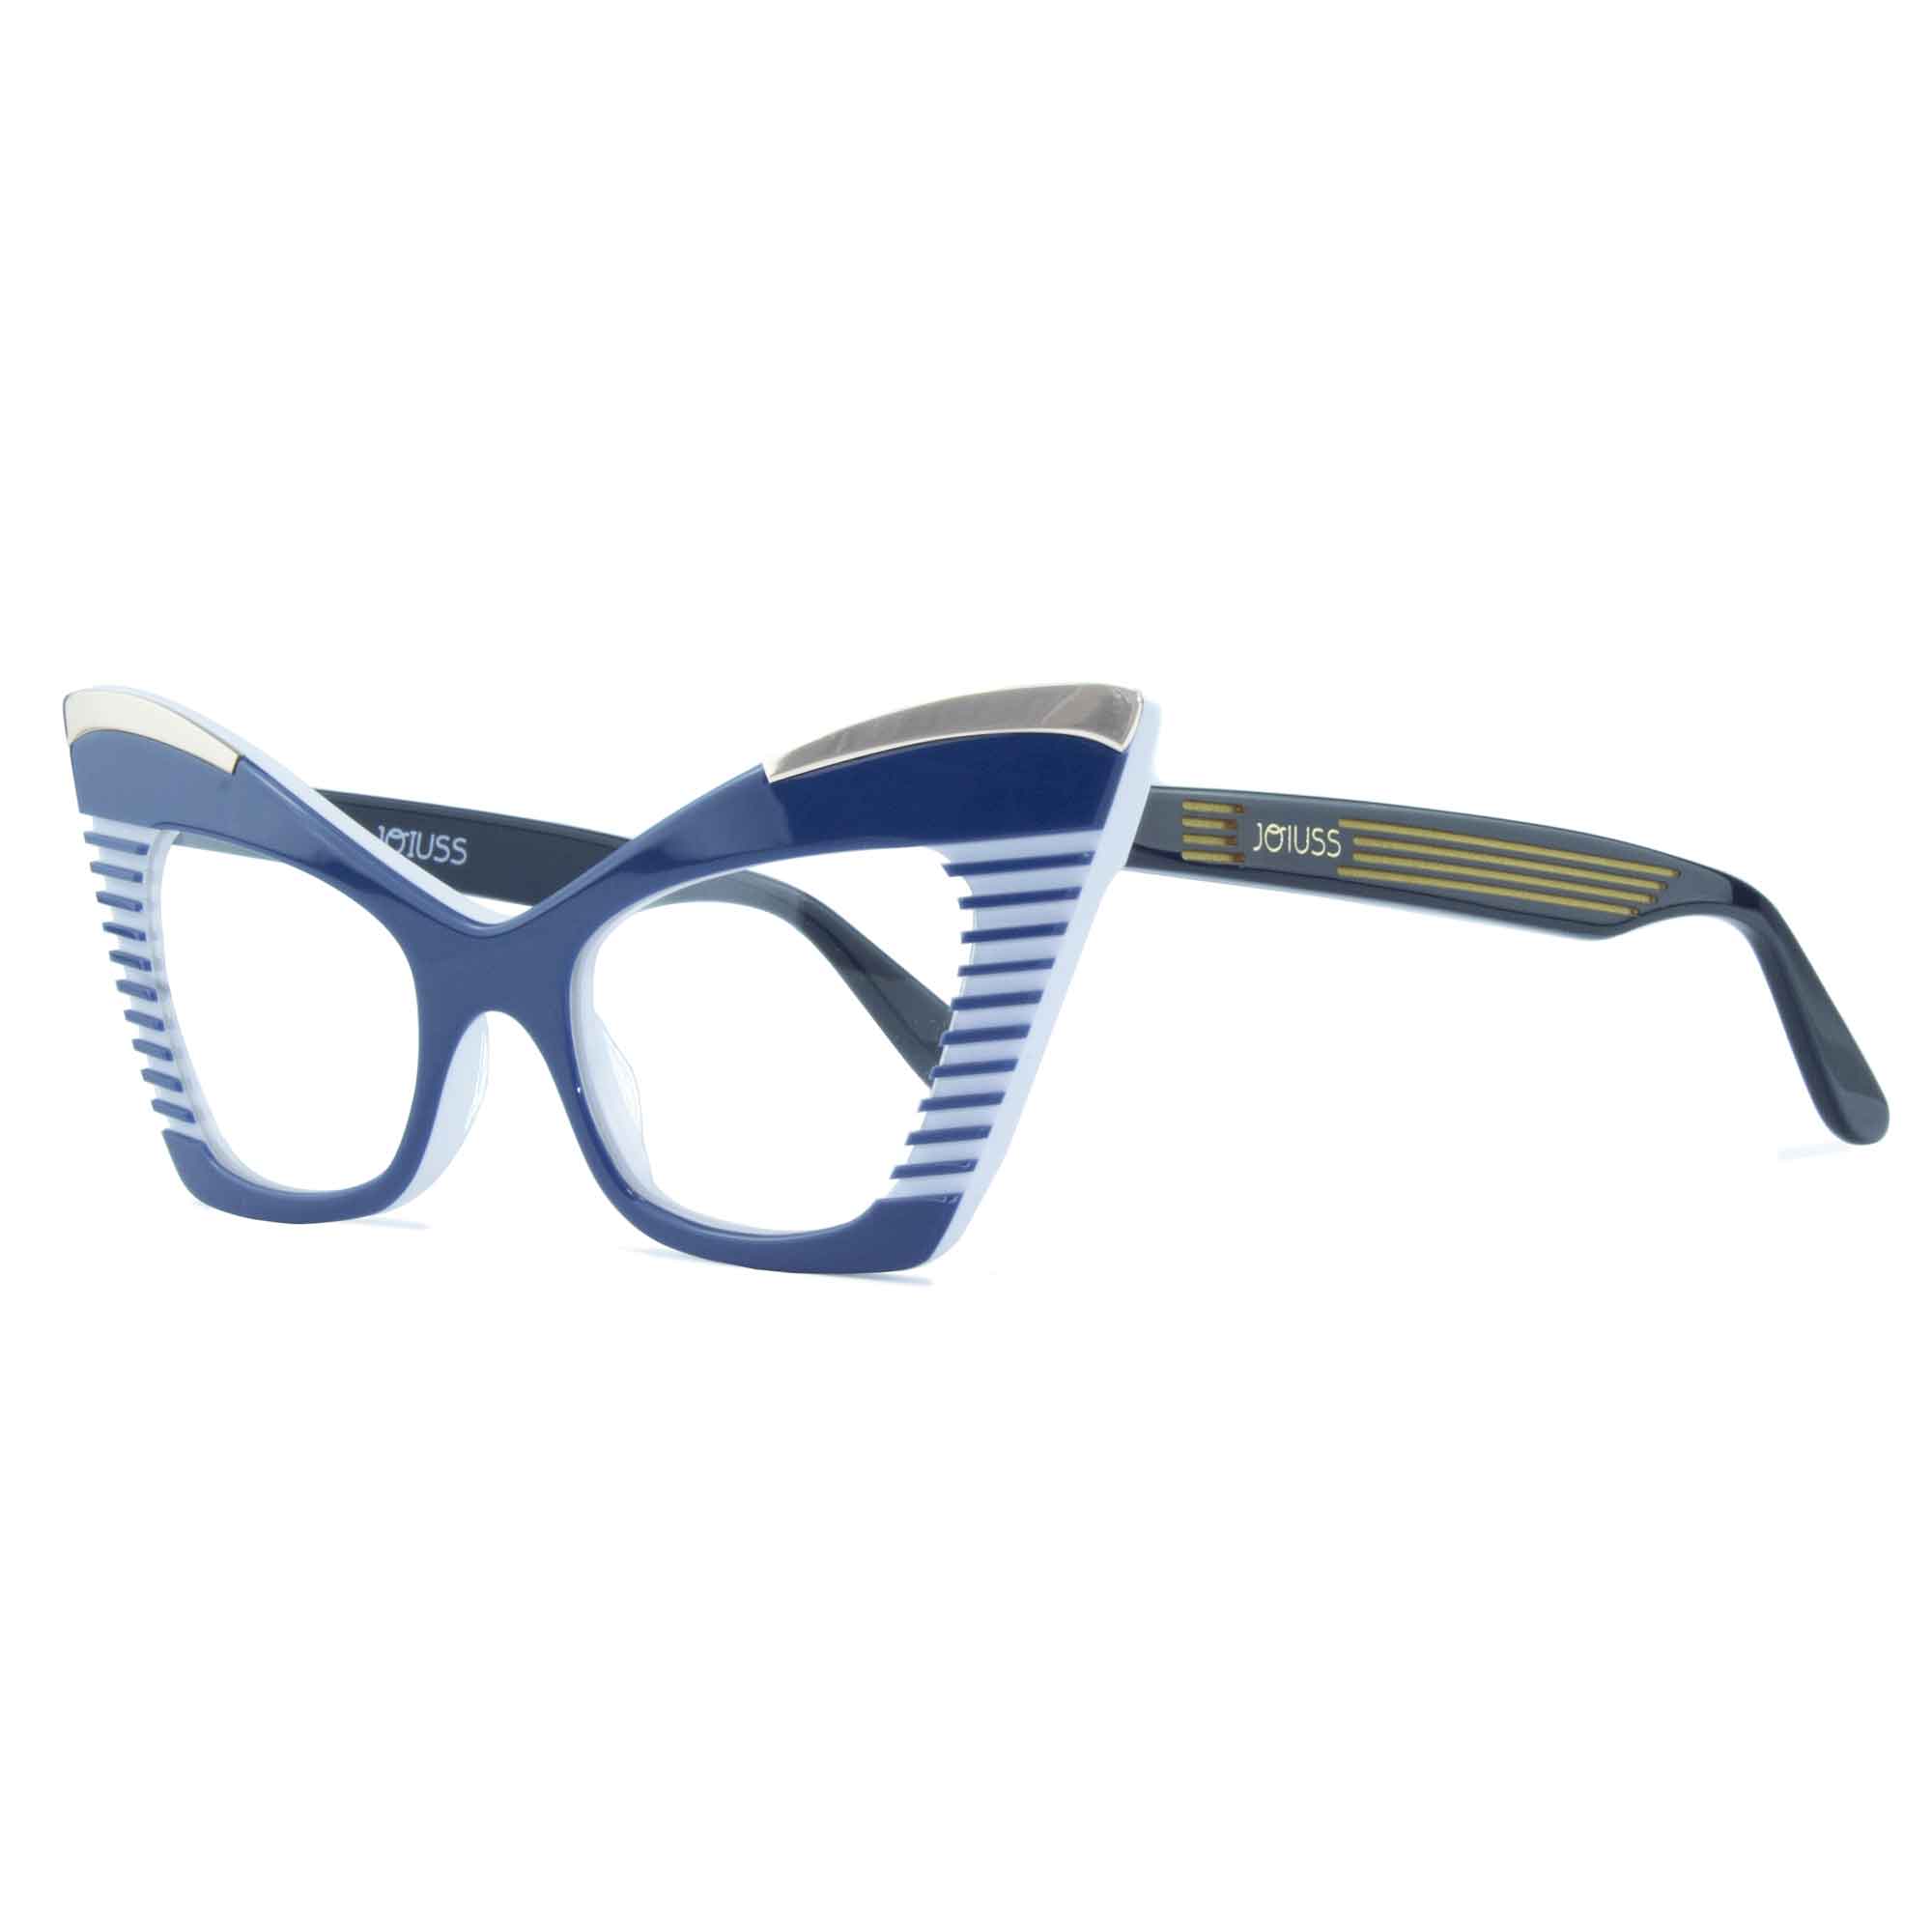 Cat Eye Glasses Frame - Navy & White - Doreen